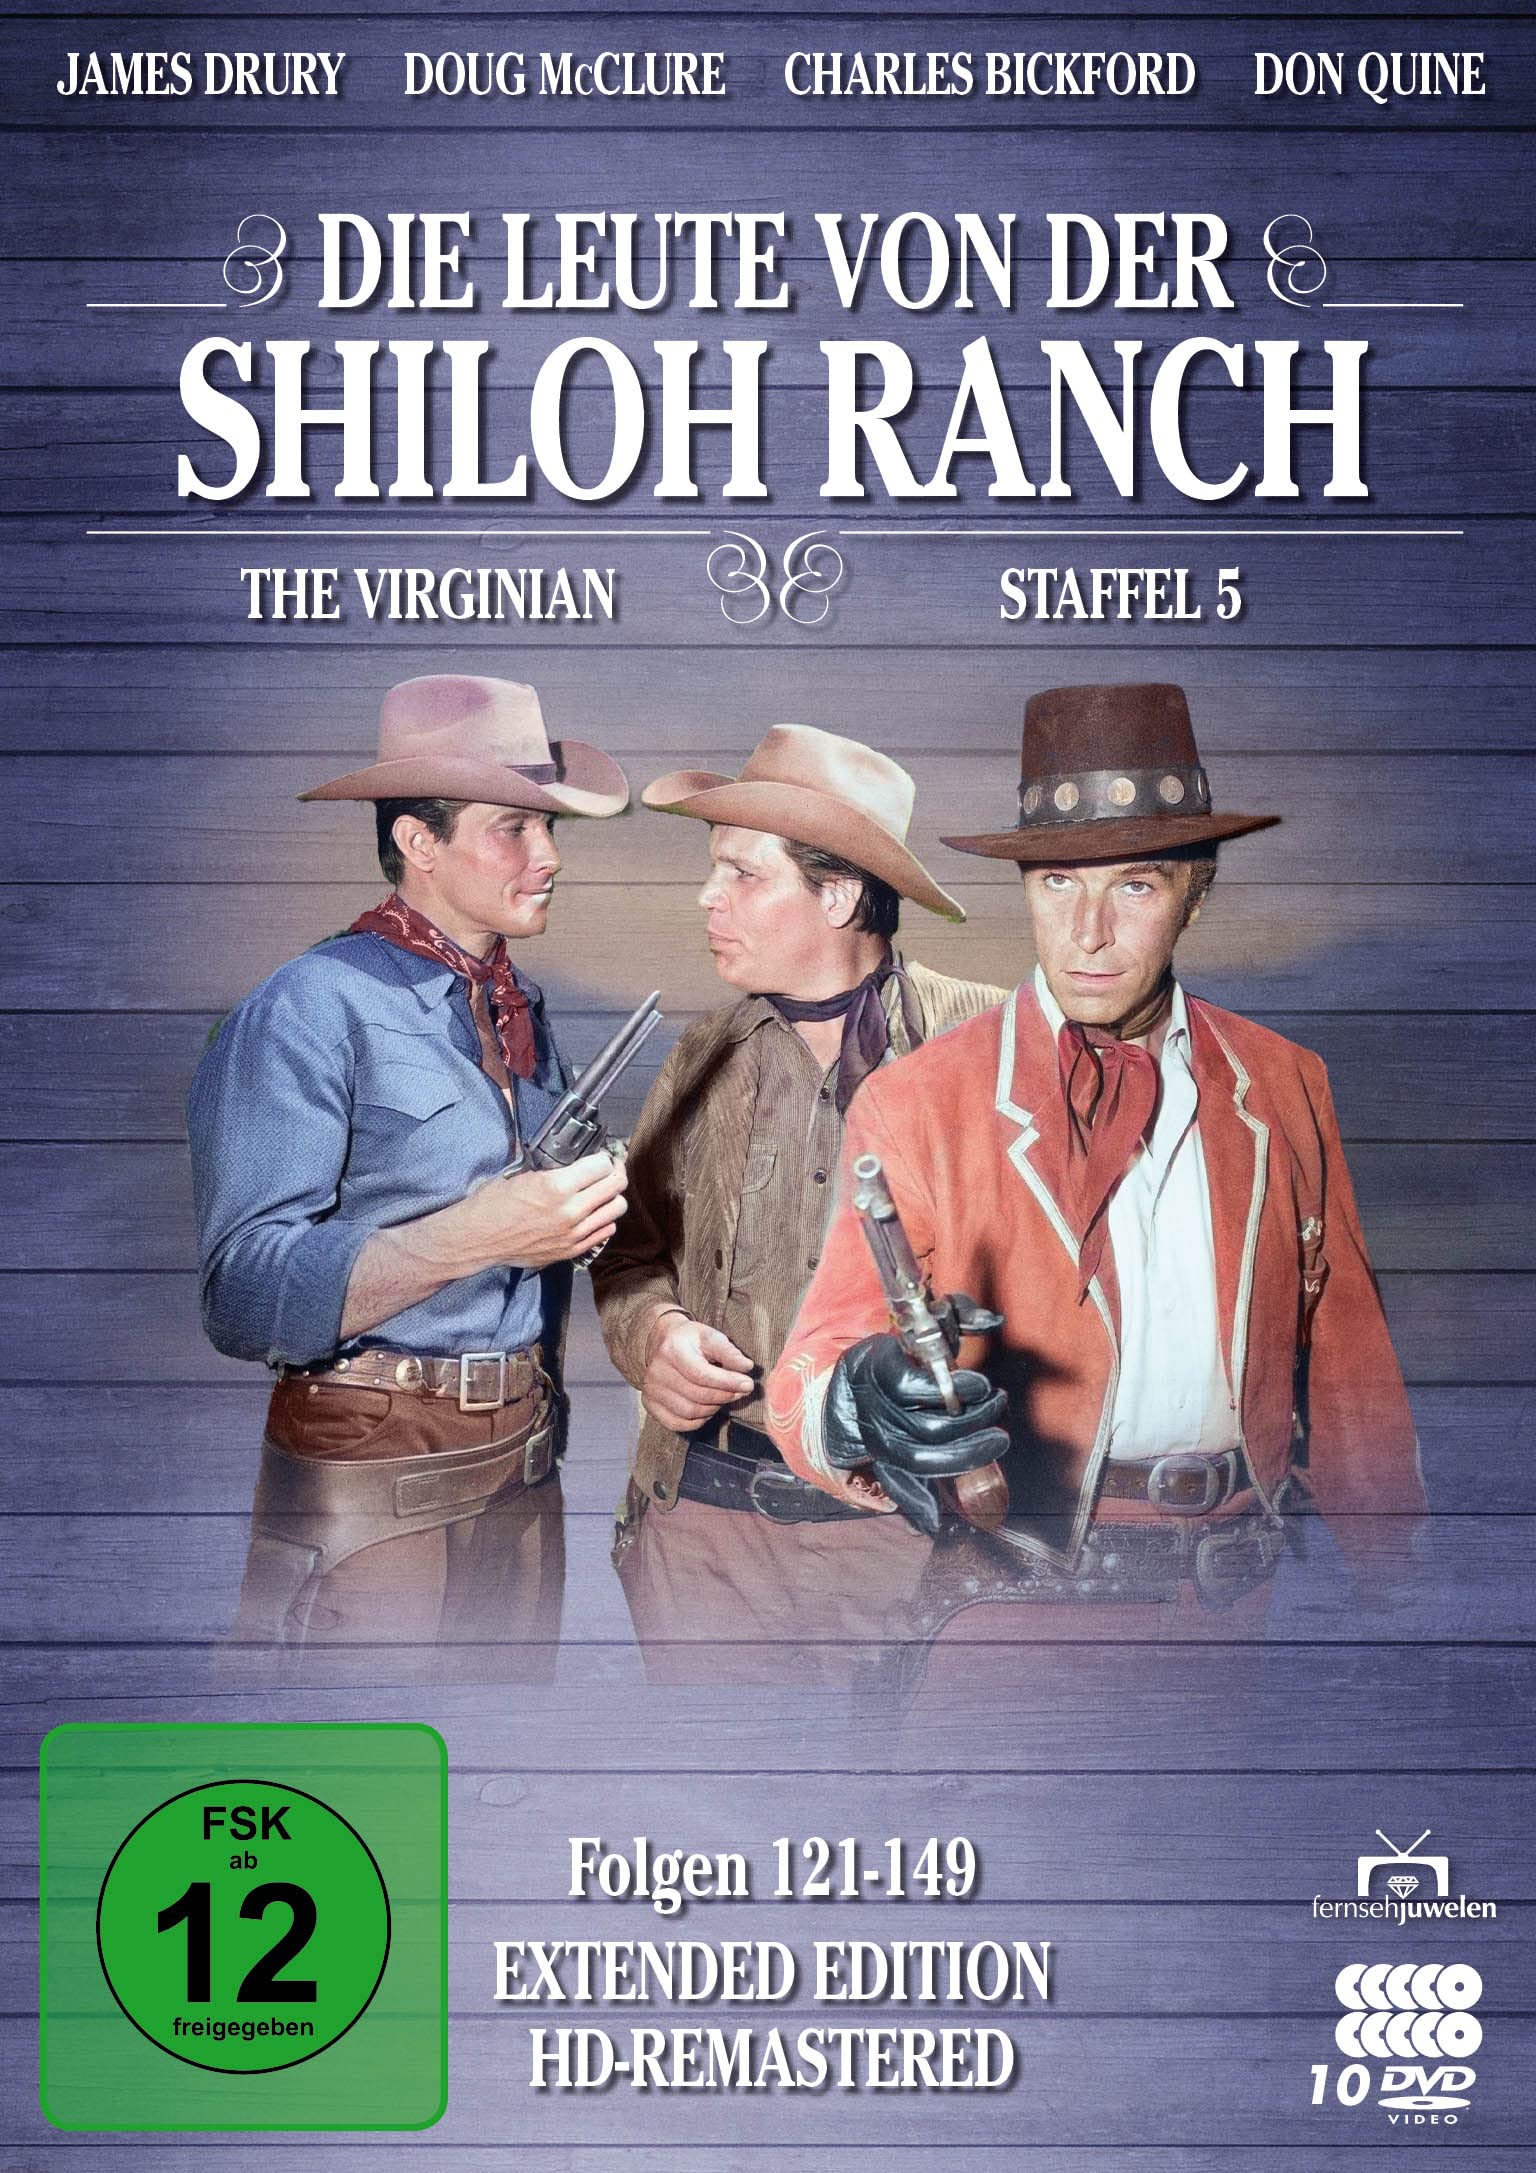 Die Leute von der Shiloh Ranch - Staffel 5 (HD-Remastered) (Fernsehjuwelen) [10 DVDs]